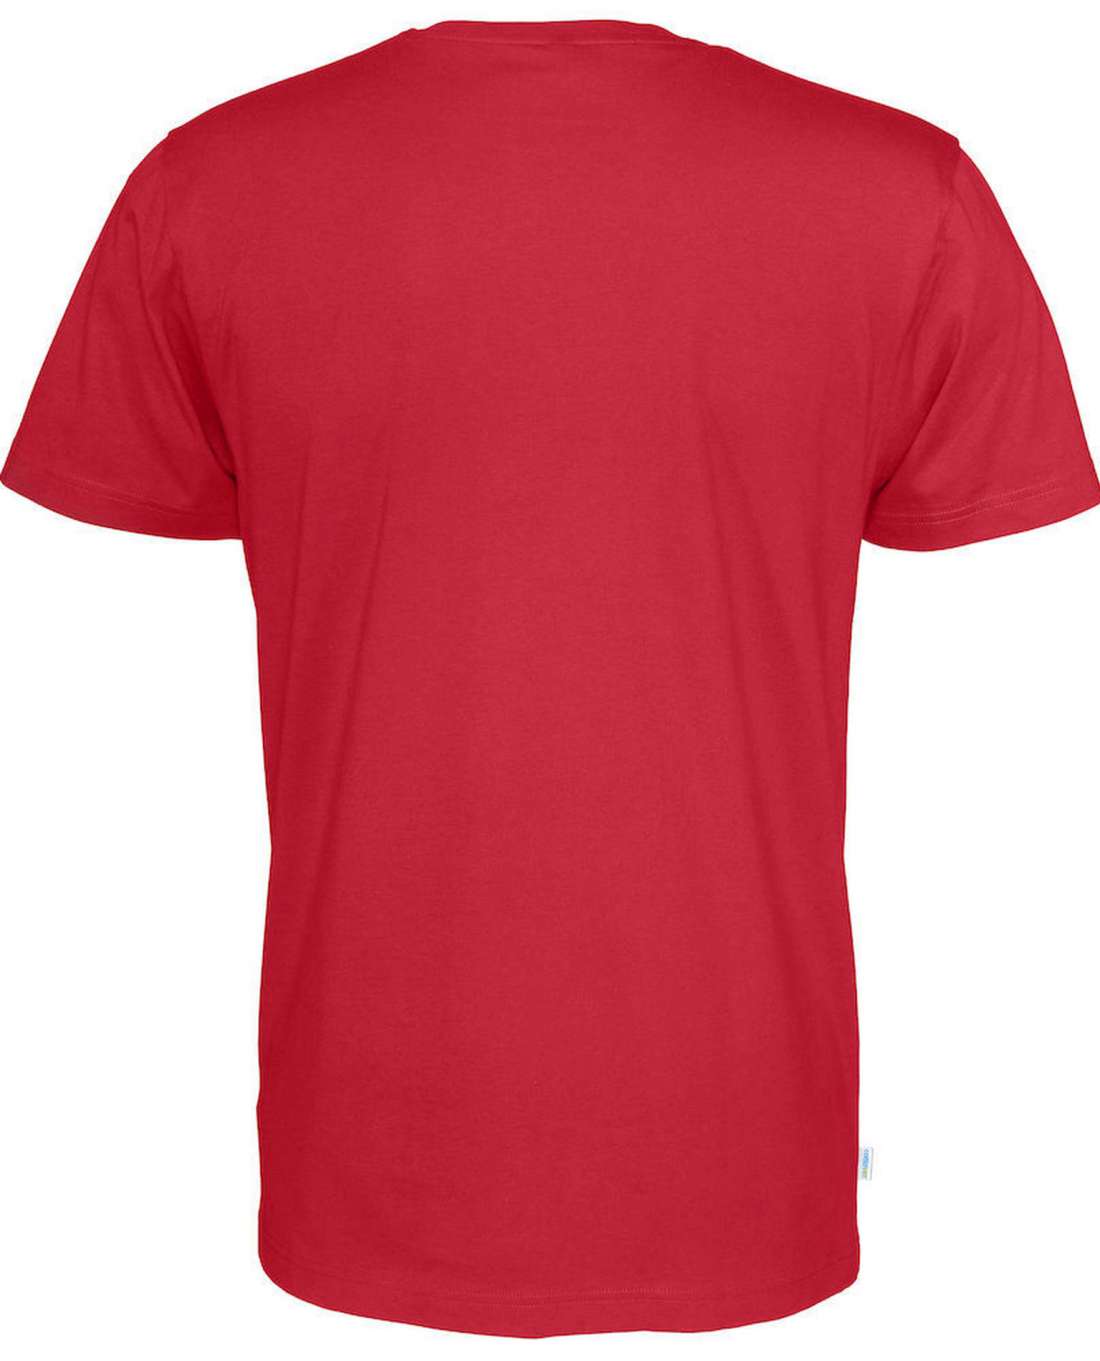 Cottover Miesten t-paita, Punainen